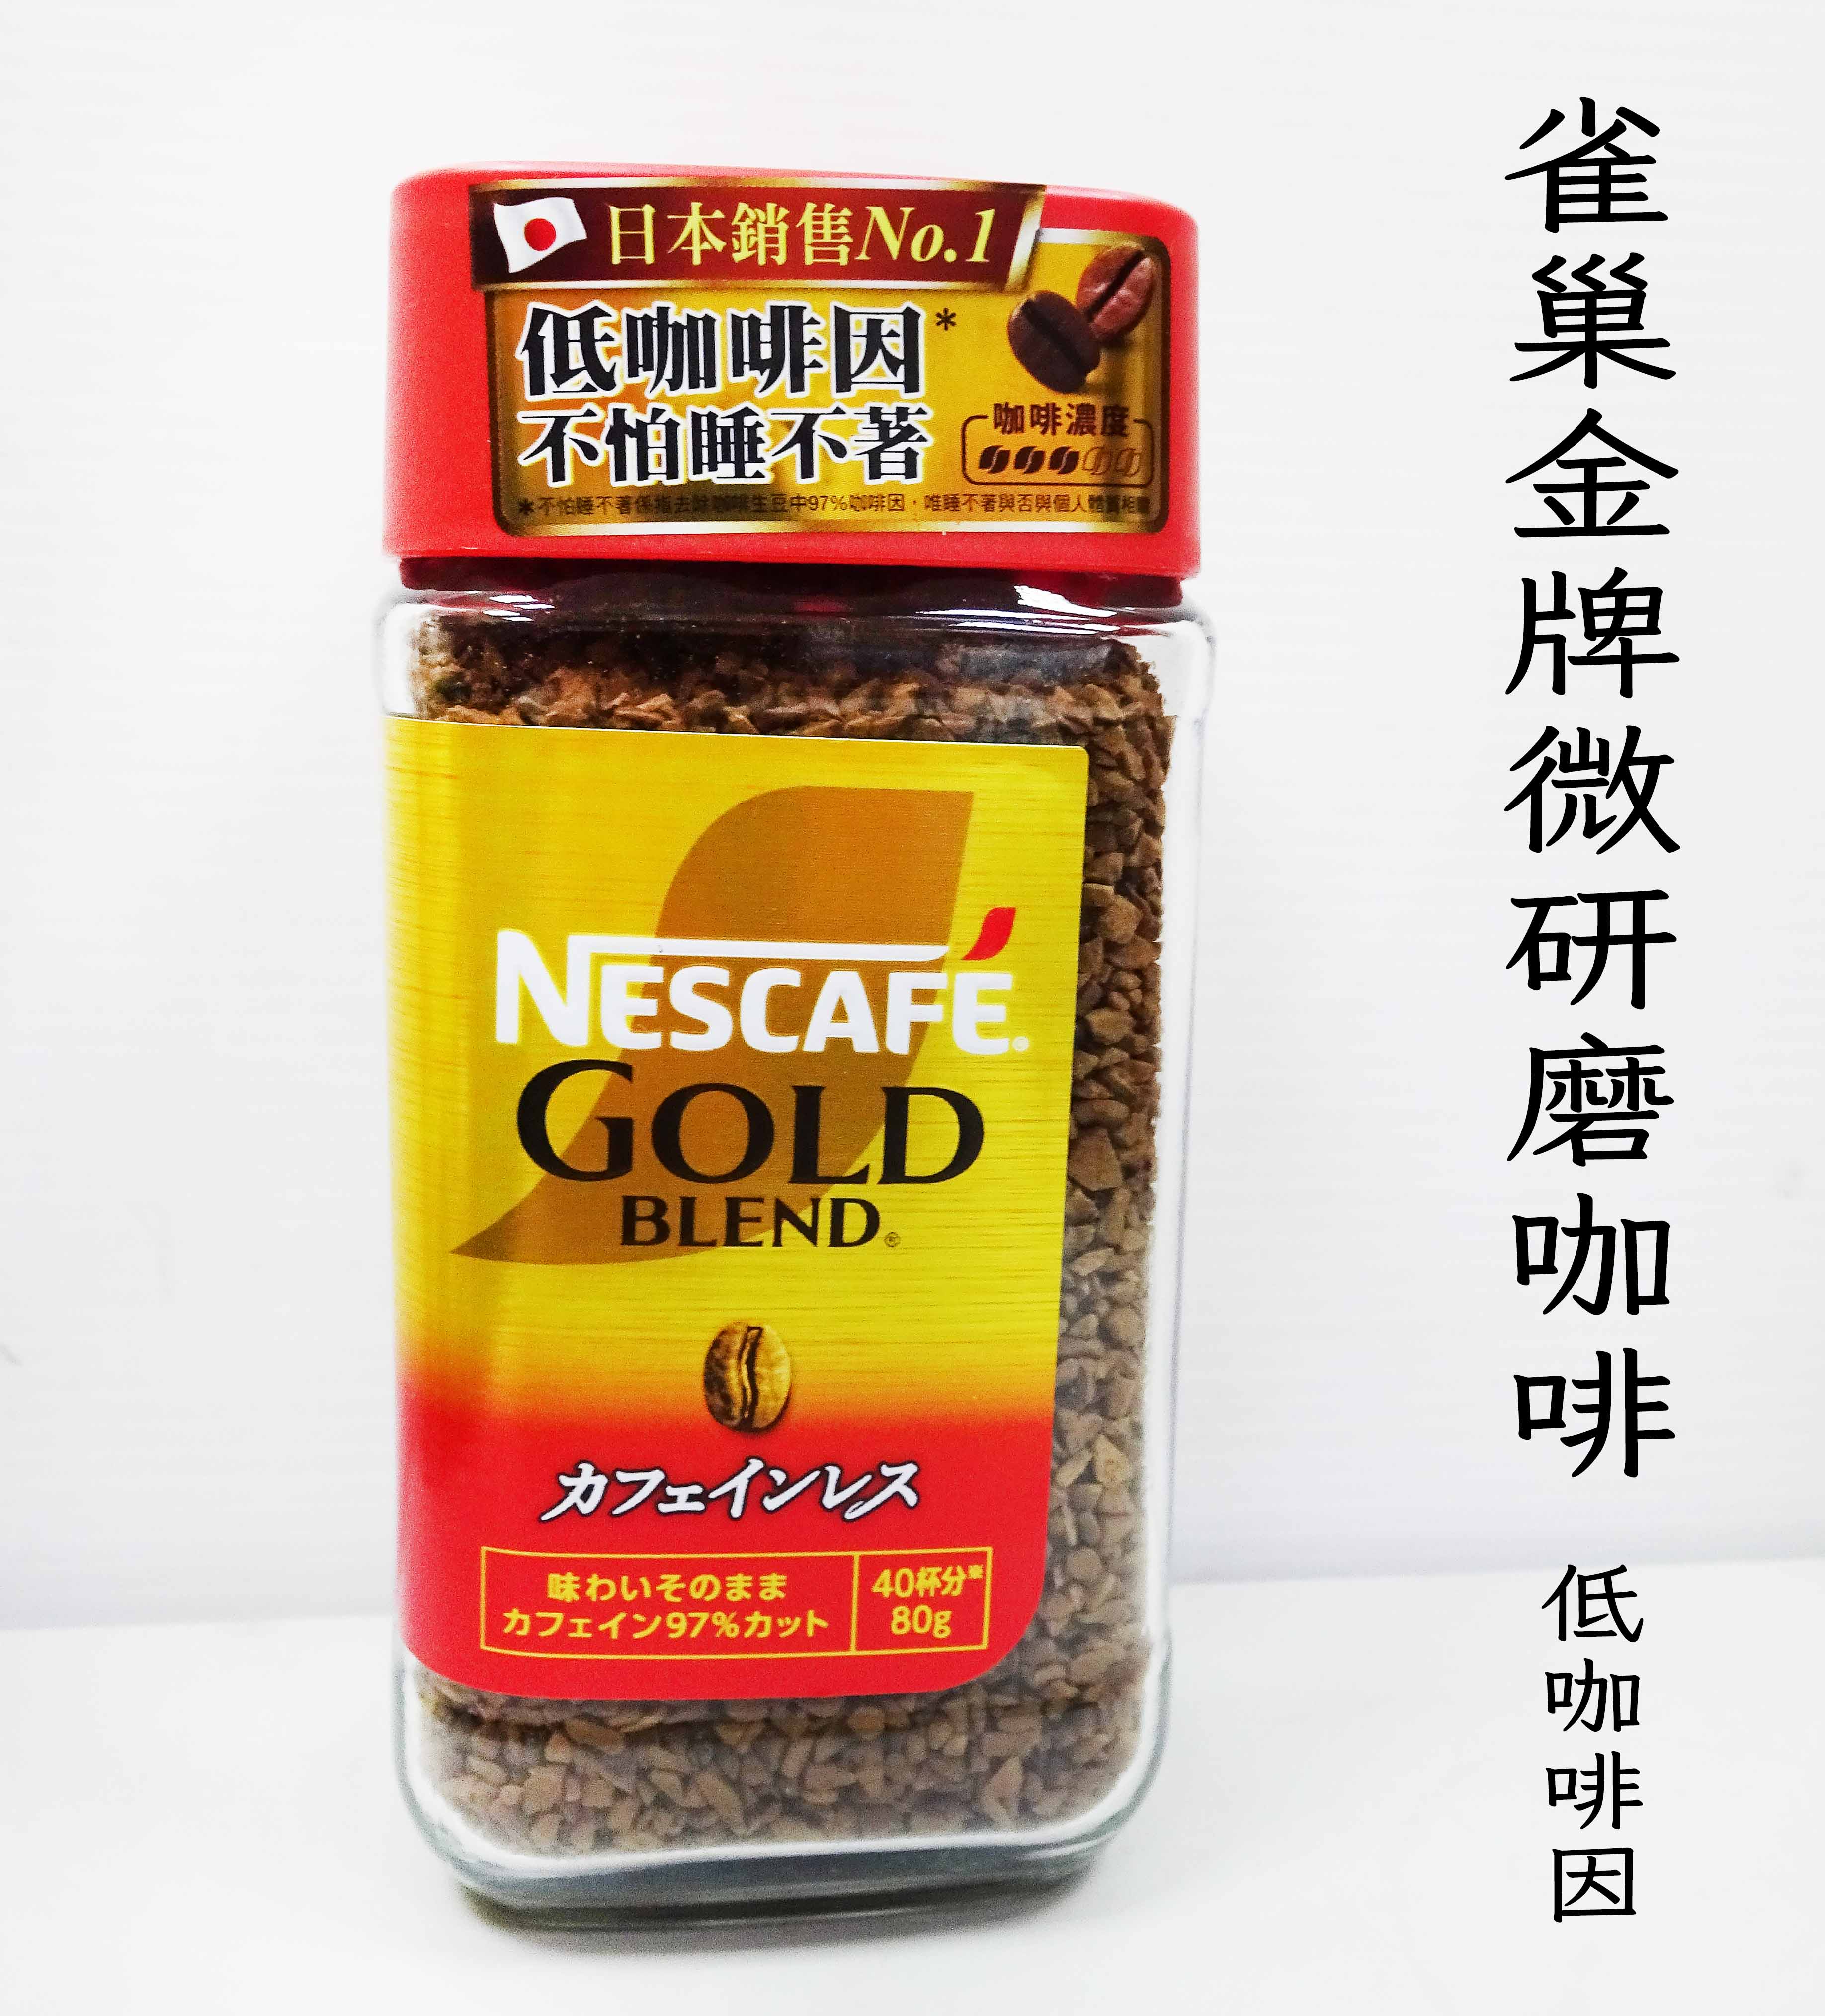 雀巢金牌微研磨咖啡-低咖啡因 80g**效期2025.10.30